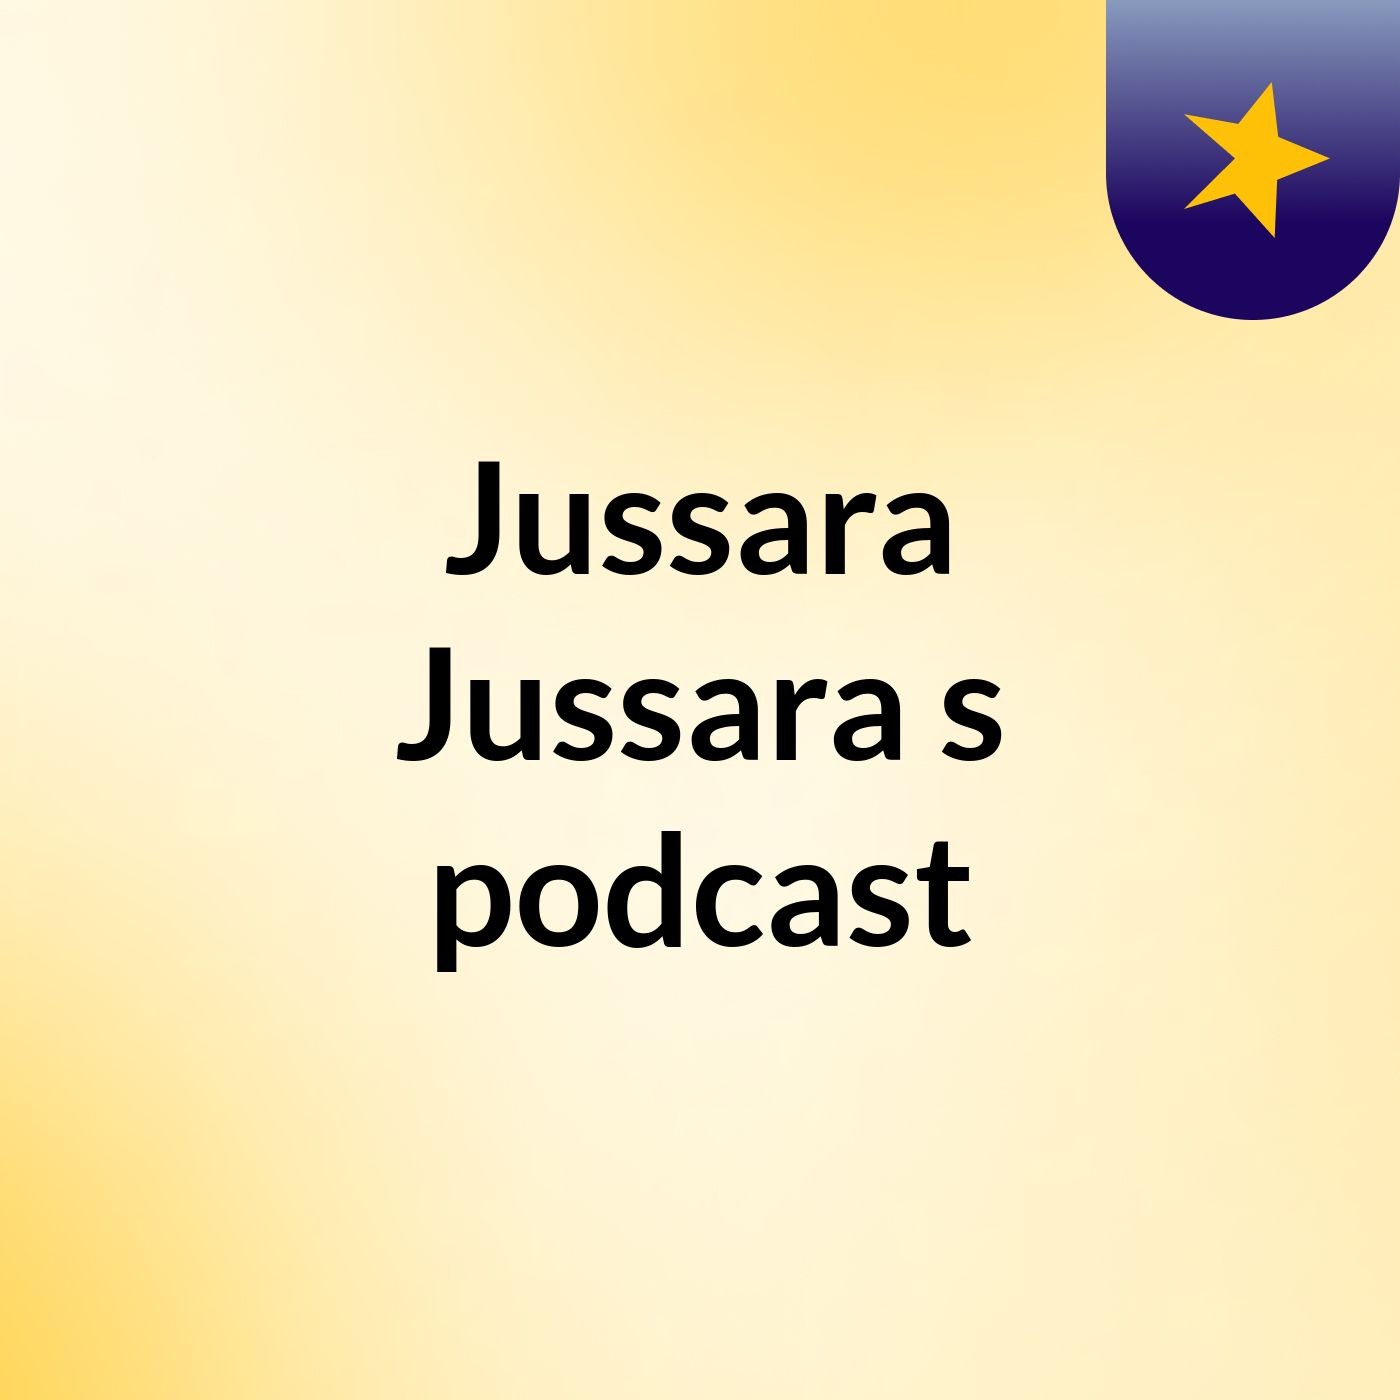 Jussara Jussara's podcast